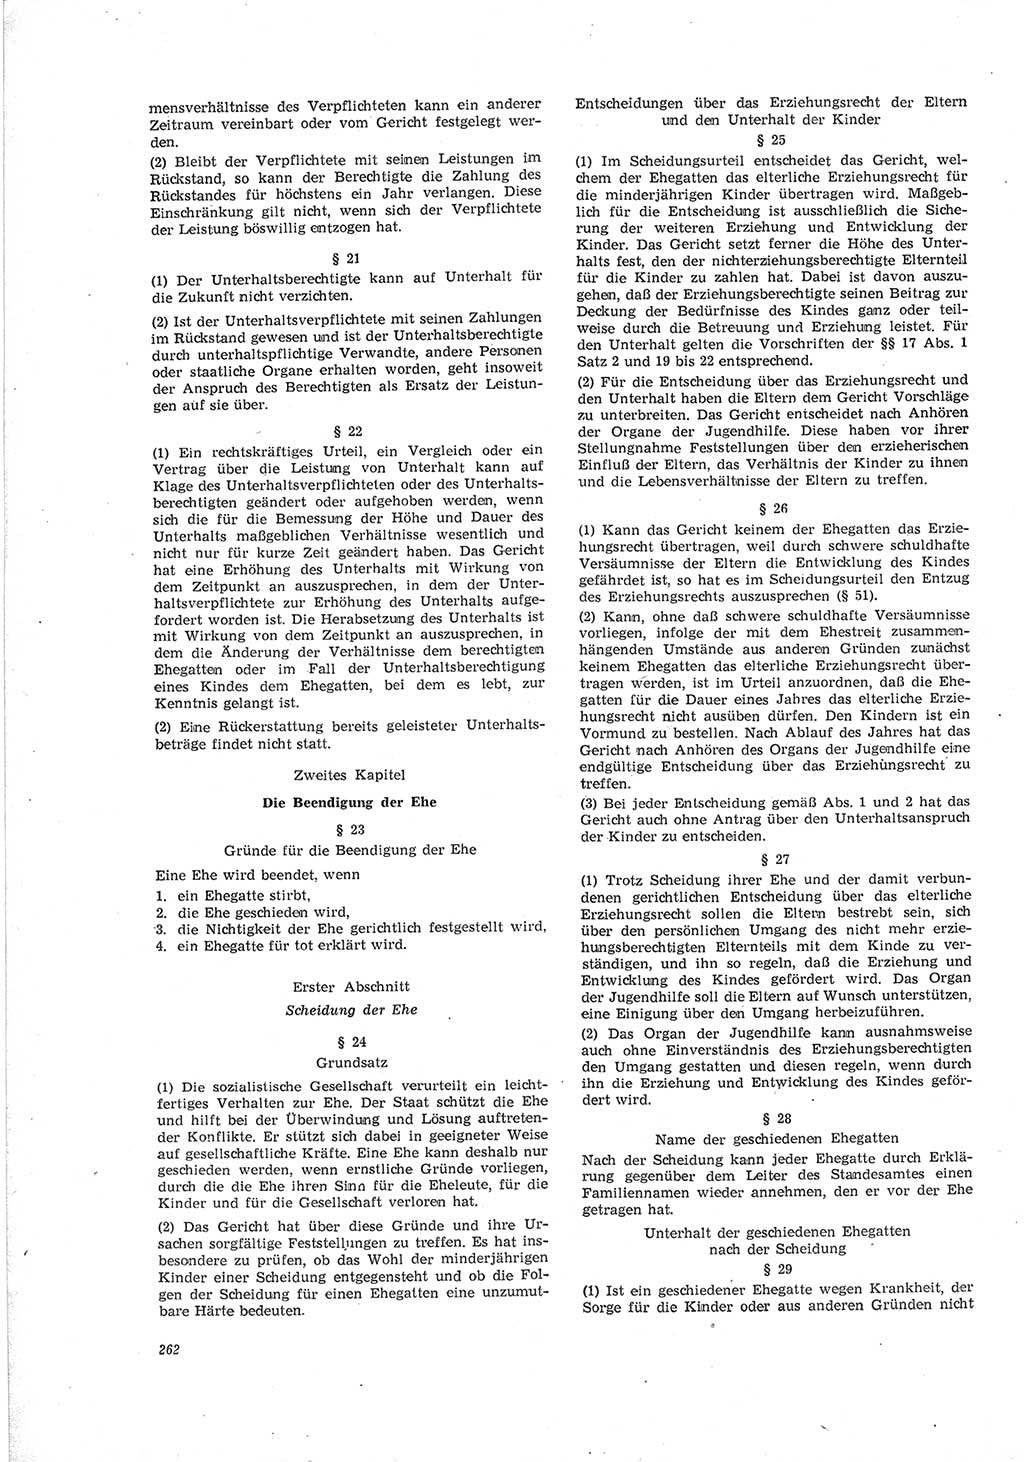 Neue Justiz (NJ), Zeitschrift für Recht und Rechtswissenschaft [Deutsche Demokratische Republik (DDR)], 19. Jahrgang 1965, Seite 262 (NJ DDR 1965, S. 262)